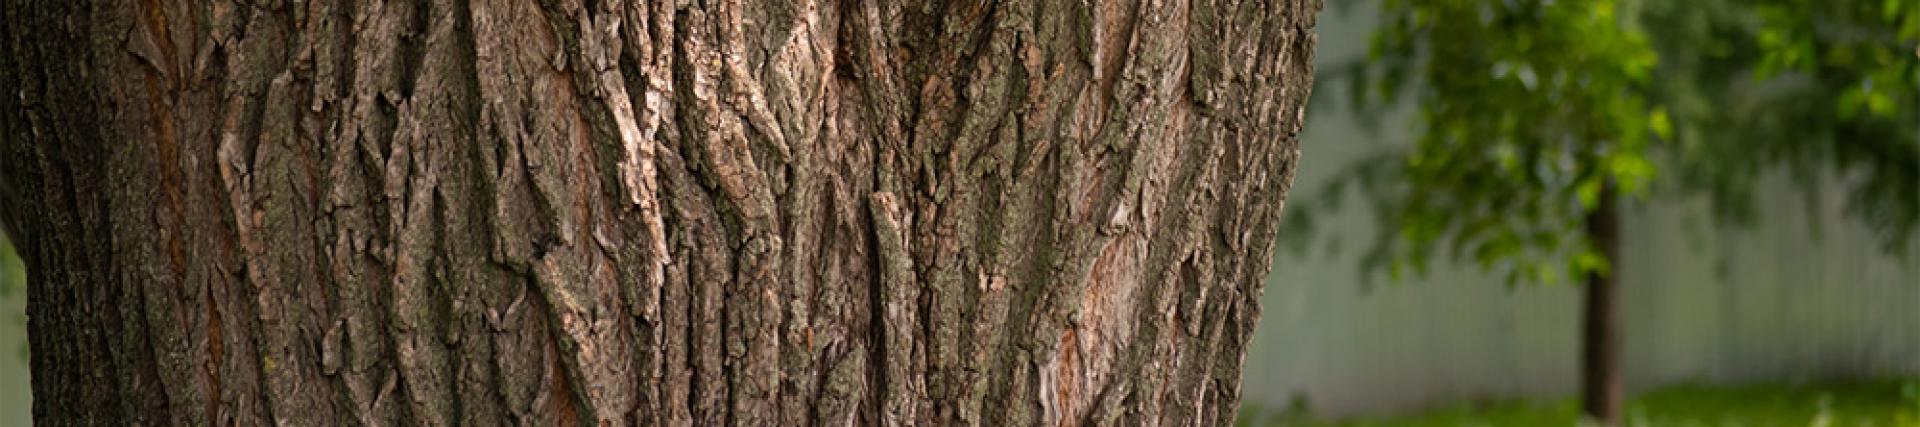 close up of a mature oak tree in a field